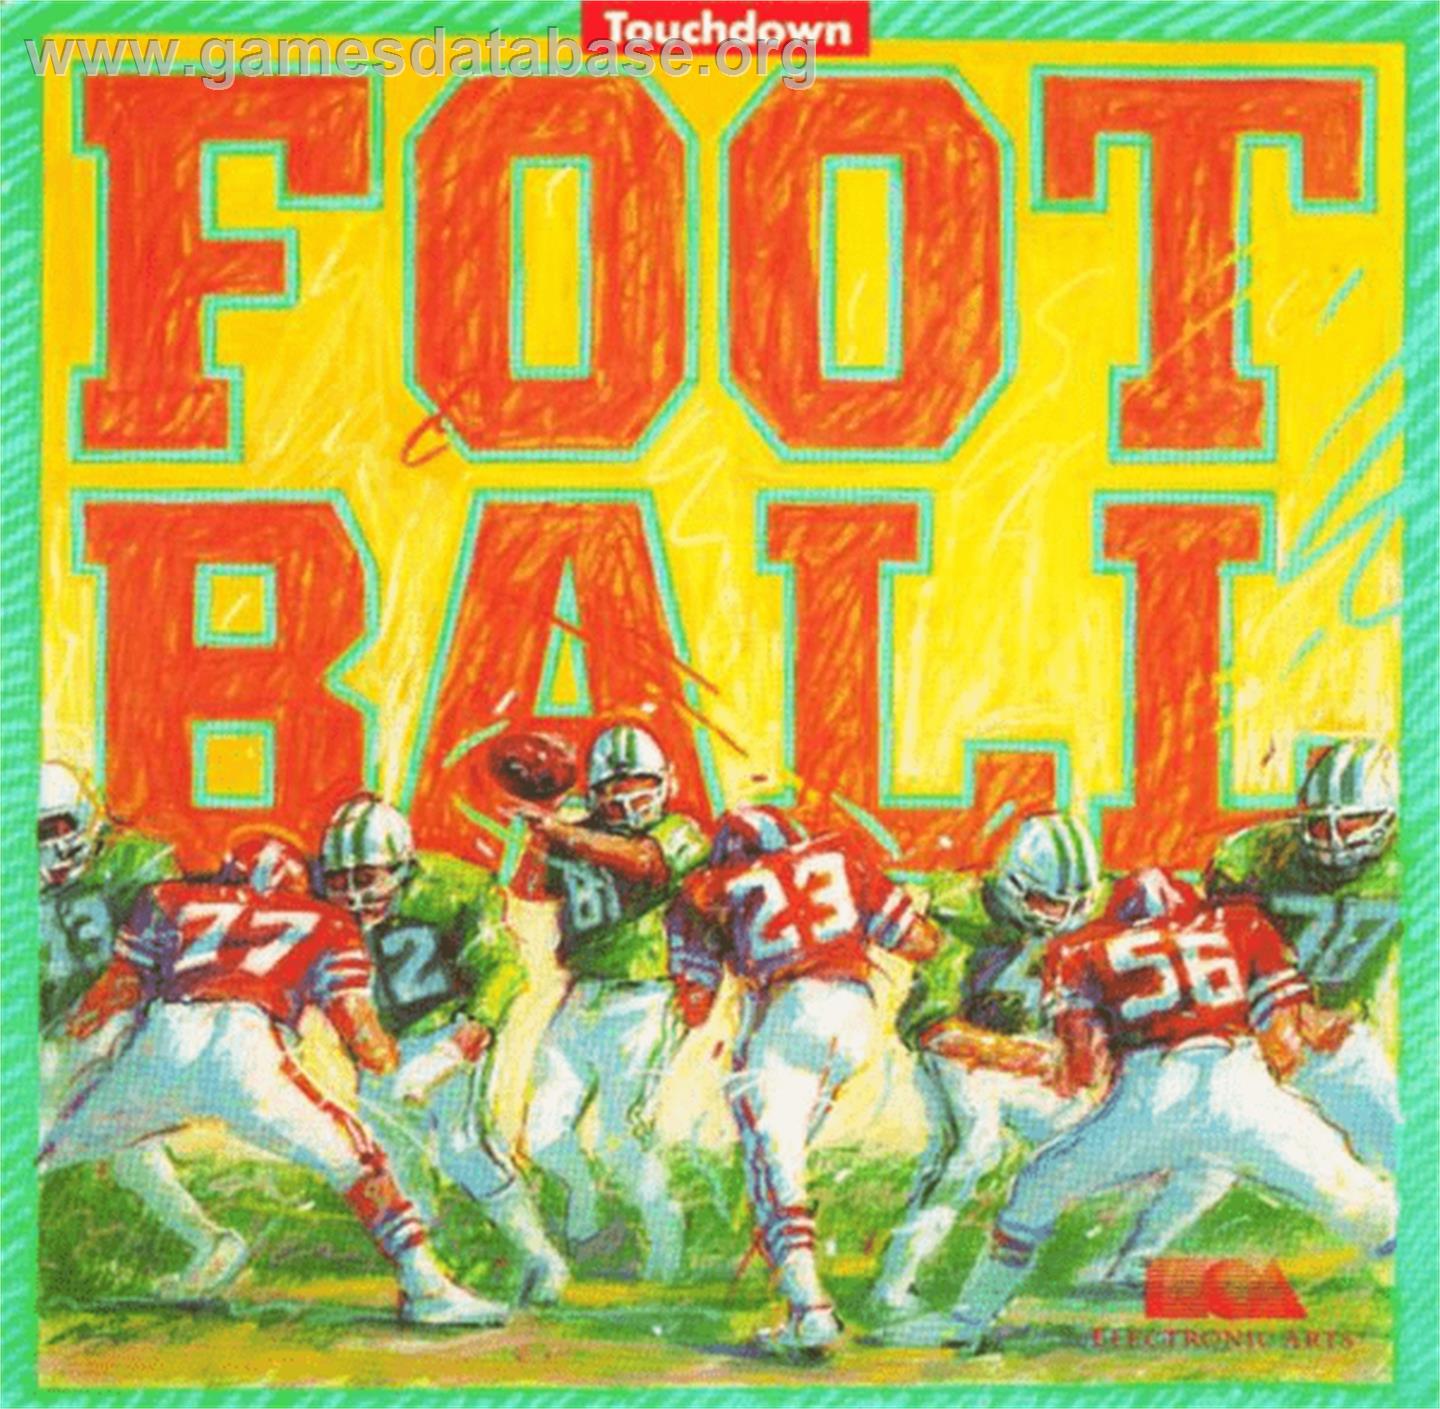 Touchdown Football - Atari 8-bit - Artwork - Box